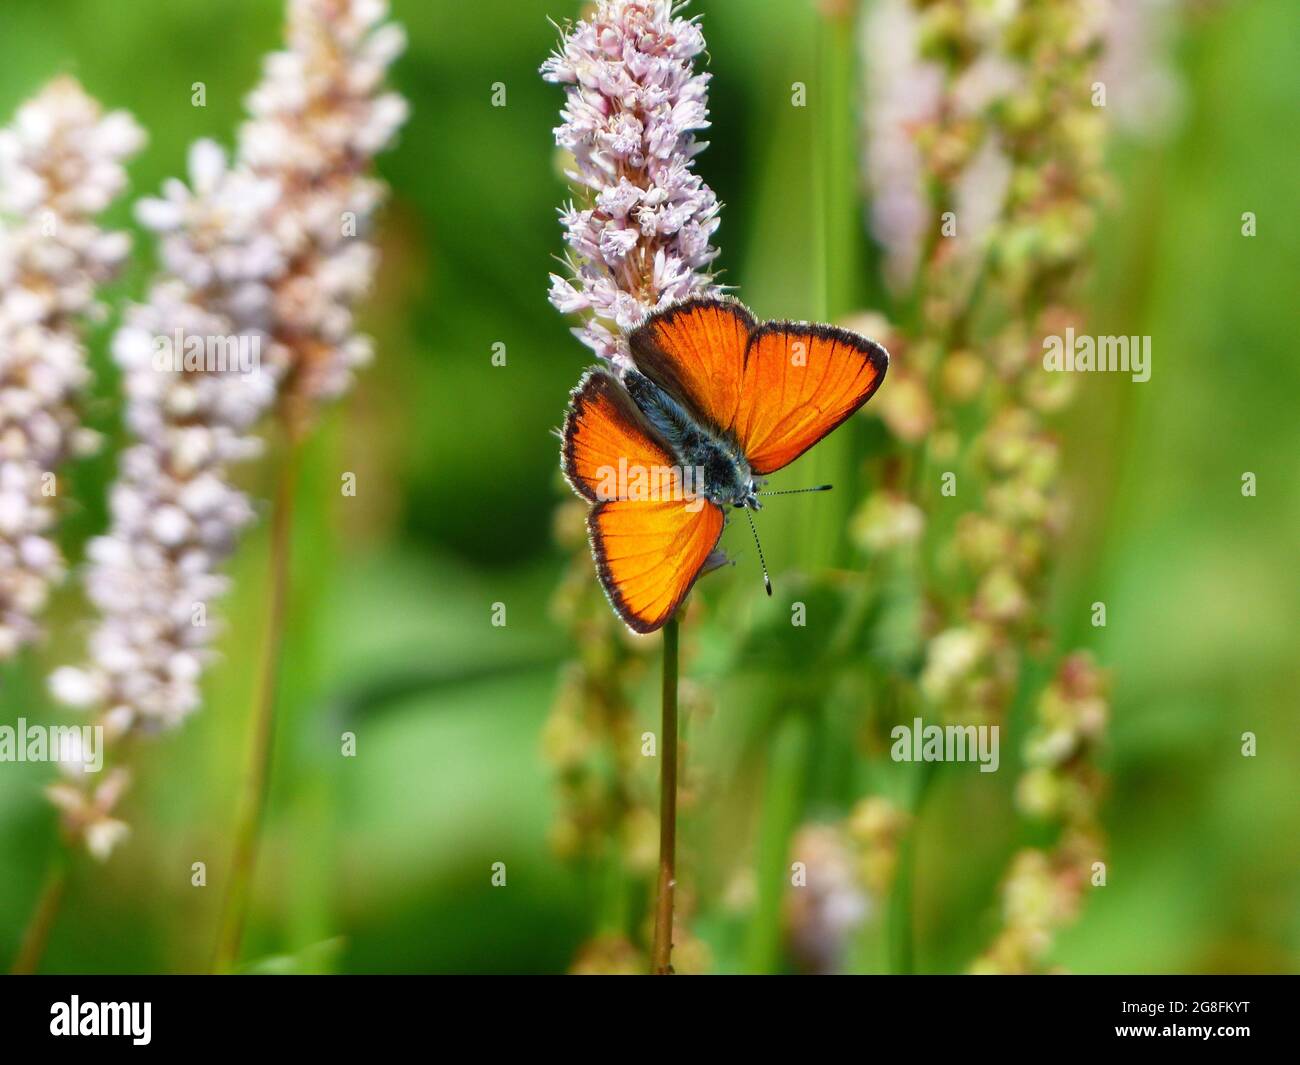 Fluttering Beauty: Una serie di accattivanti fotografie di farfalle provenienti da tutto il mondo, tra cui la Gran Bretagna Foto Stock